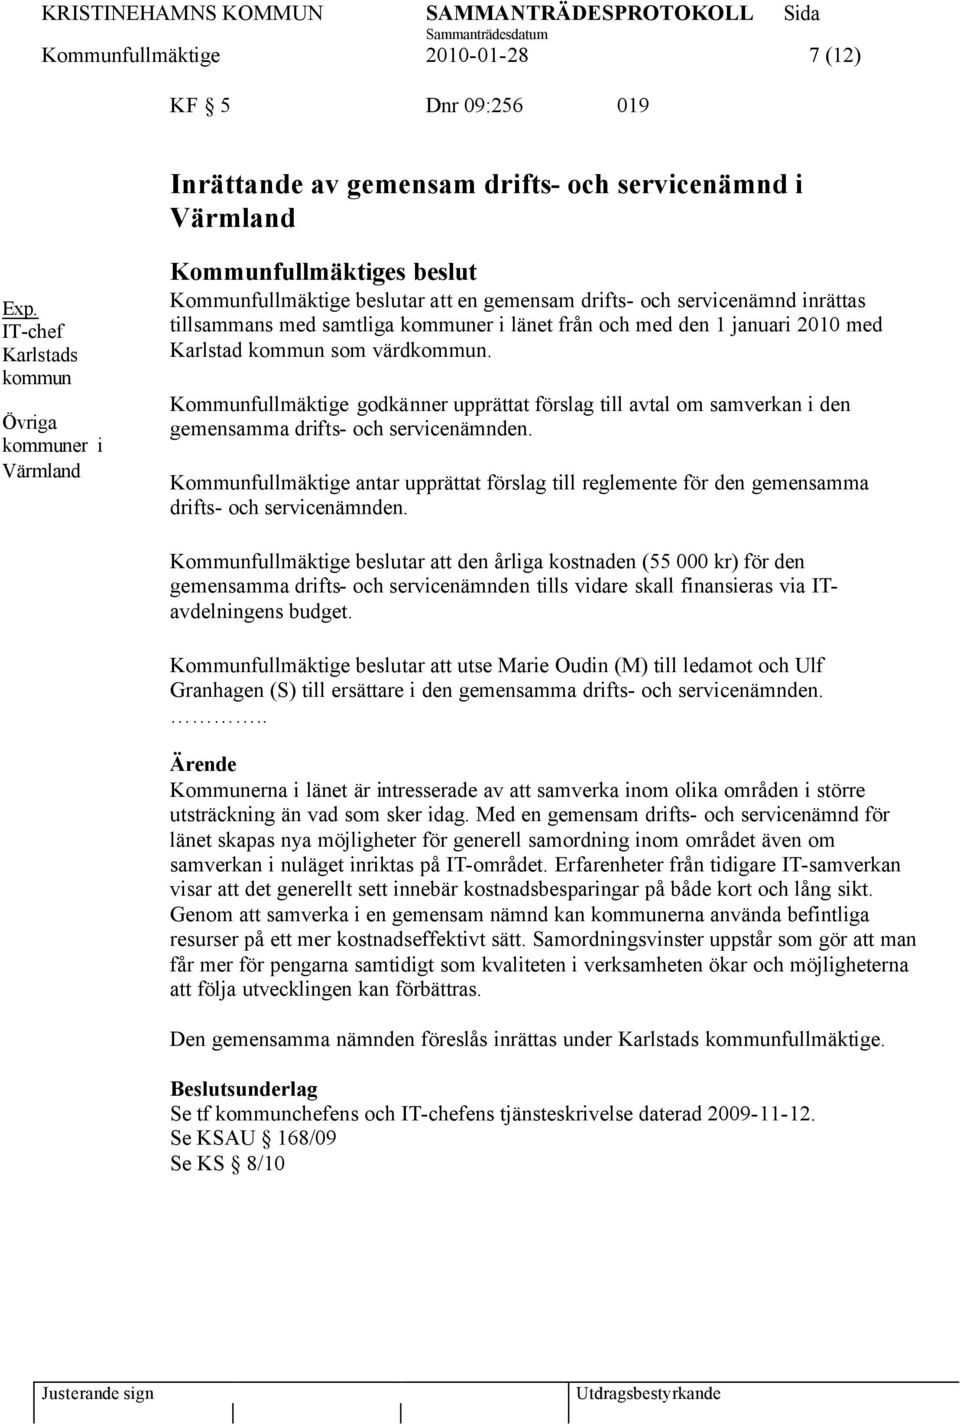 från och med den 1 januari 2010 med Karlstad kommun som värdkommun. Kommunfullmäktige godkänner upprättat förslag till avtal om samverkan i den gemensamma drifts- och servicenämnden.